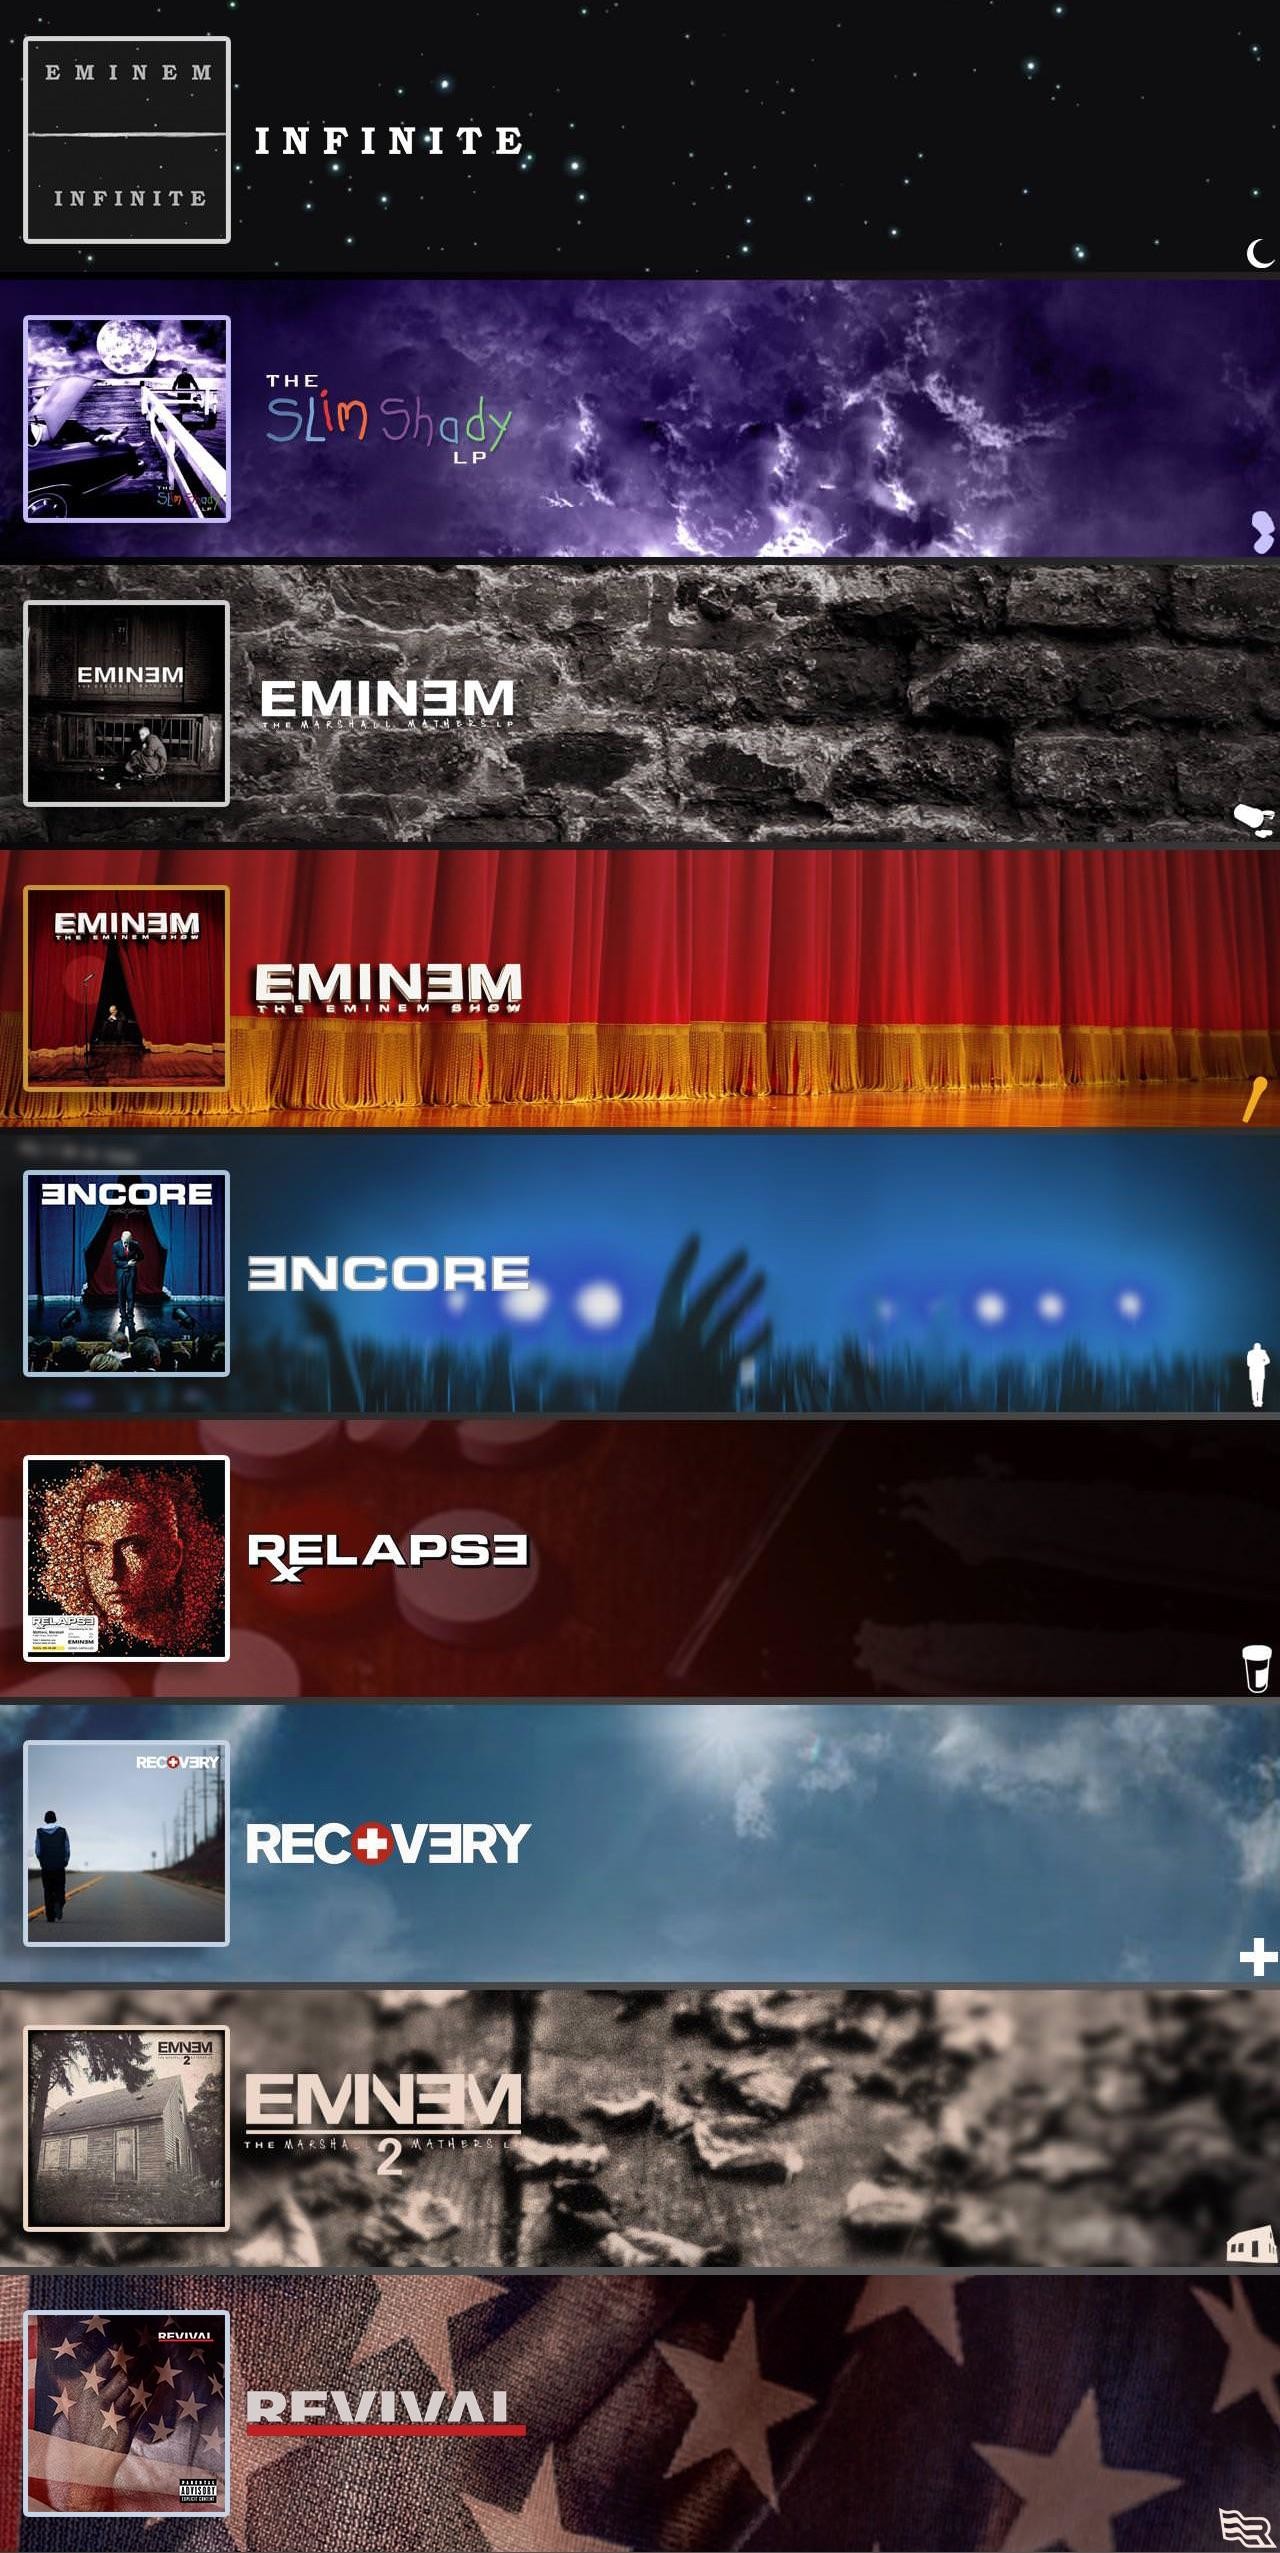 Free Download Eminem 2018 Wallpaper Recovery 75 Images 1280x2553 For Your Desktop Mobile Tablet Explore 18 Eminem Revival Wallpapers Eminem Revival Wallpapers 70s Wallpaper Retro Revival Eminem Wallpapers